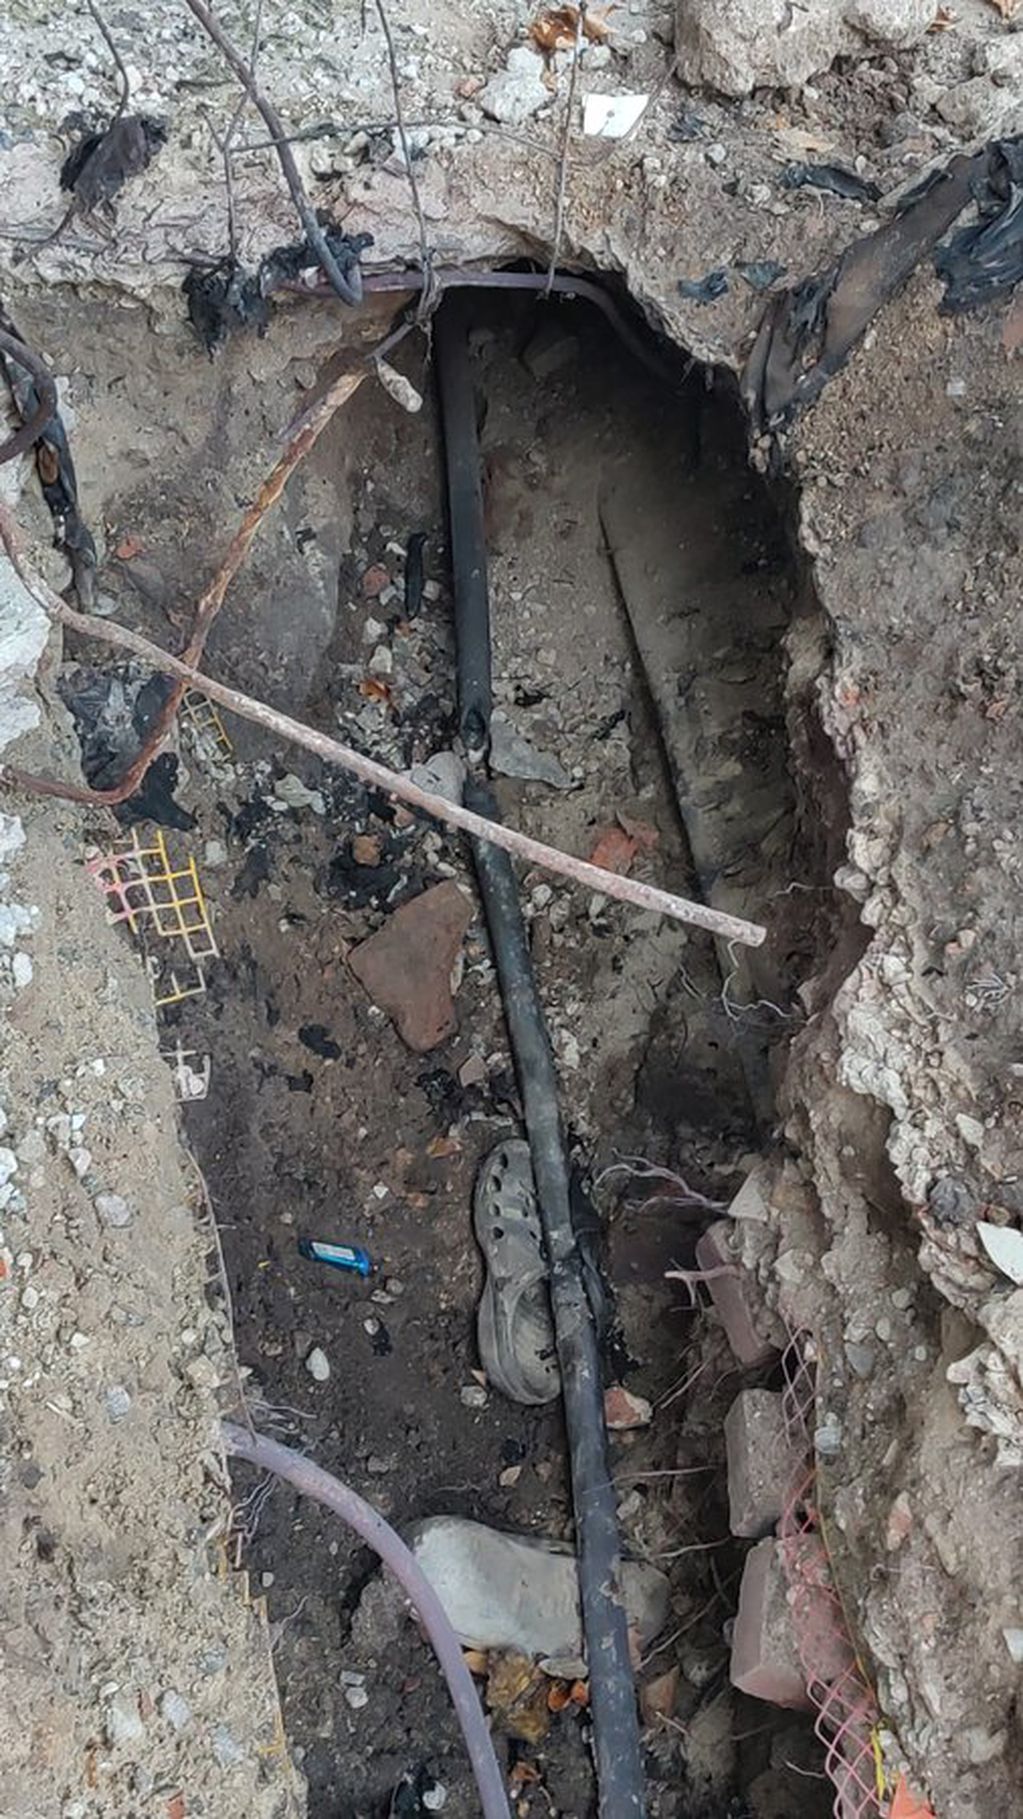 Posteo del EPE sobre los cables subterráneos vandalizados. Foto: X / @epeoficial